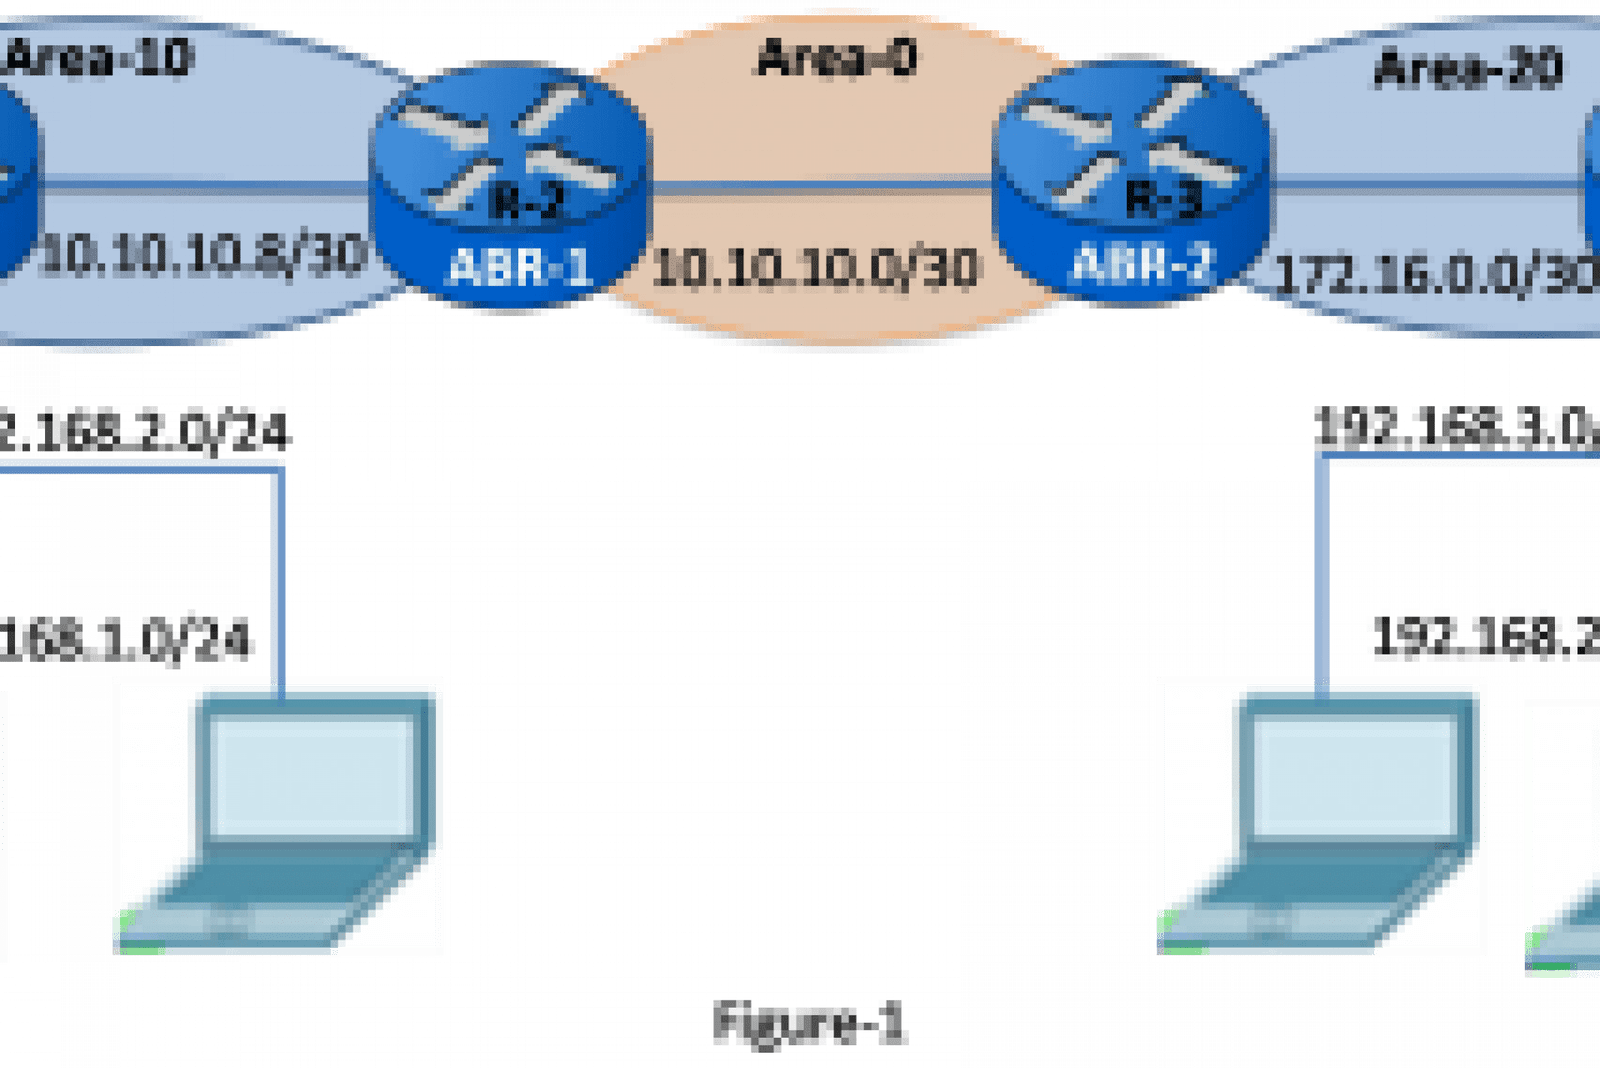 Multiarea OSPF